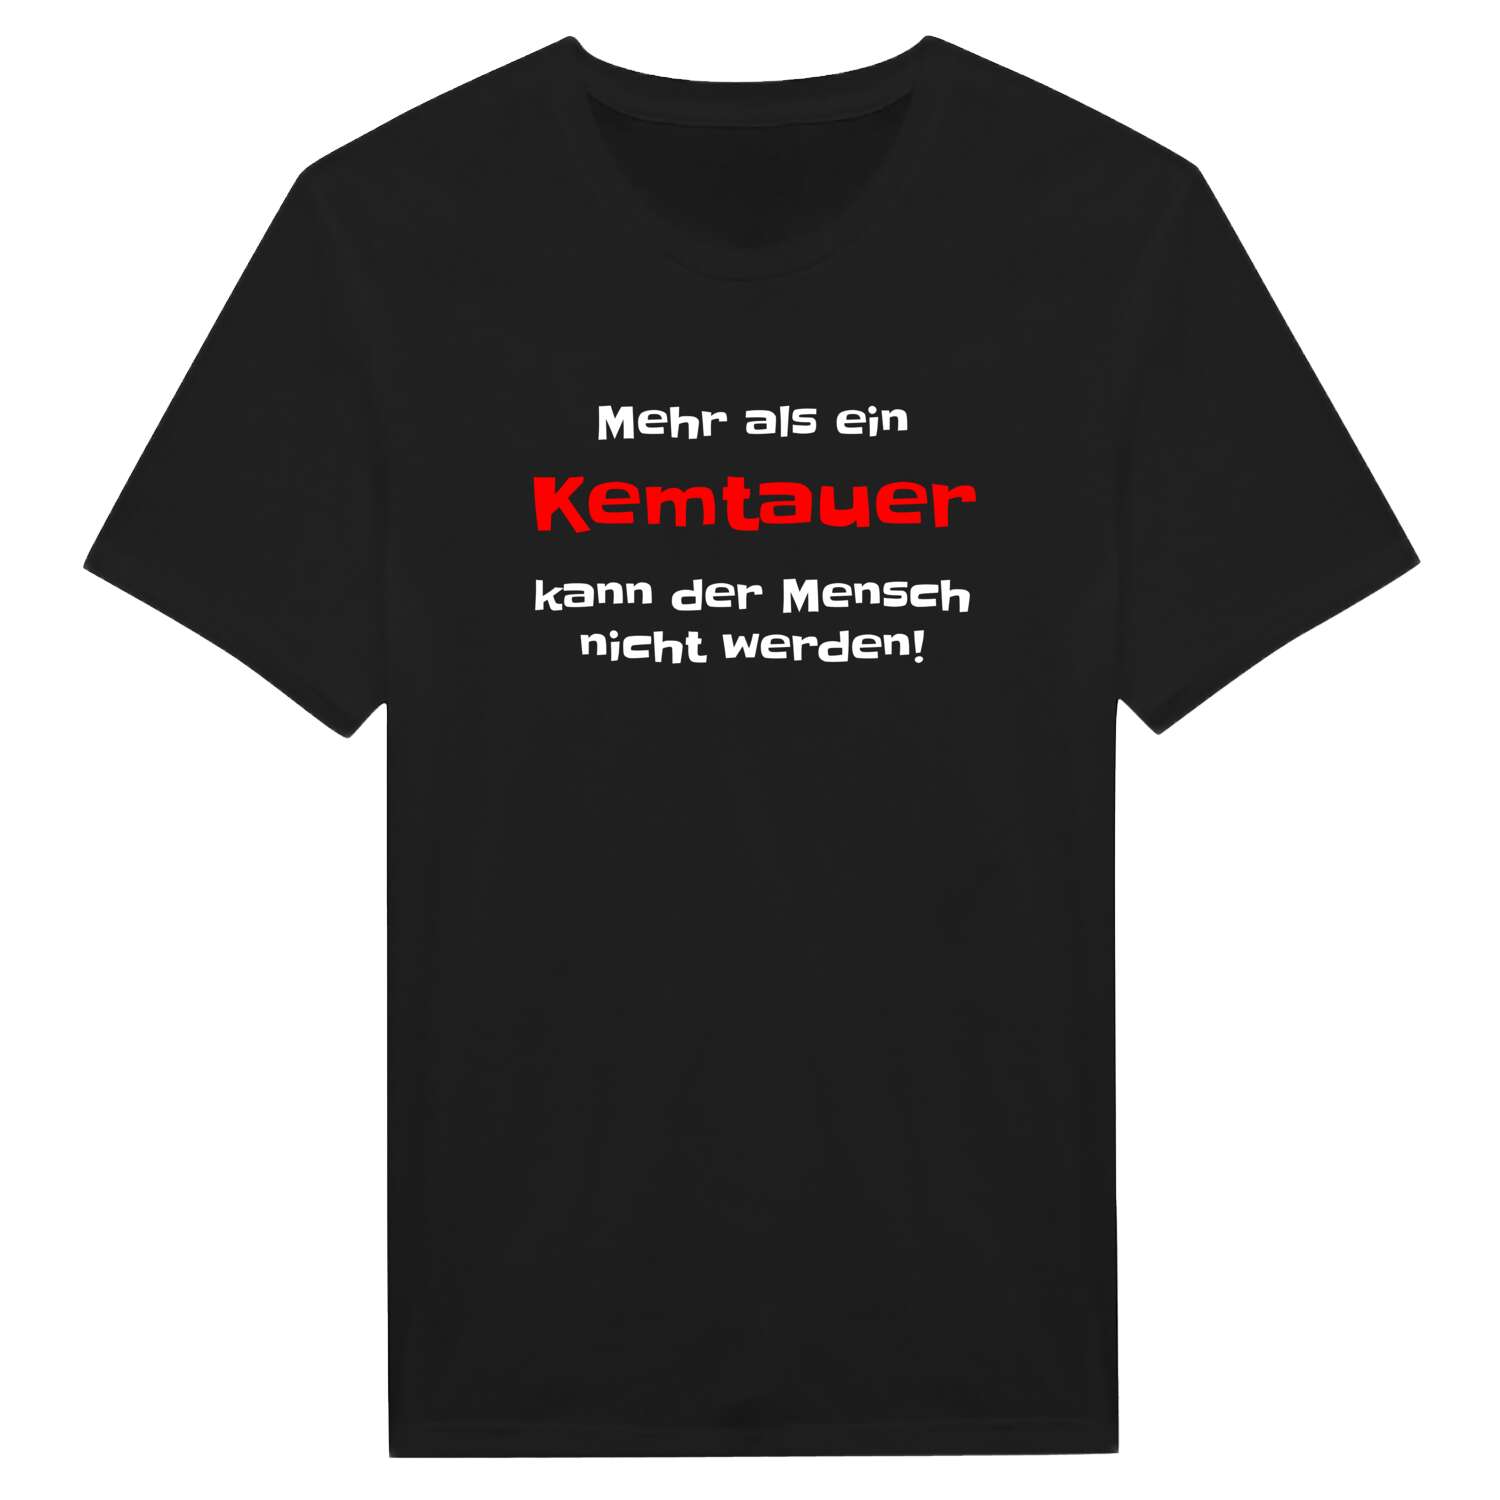 Kemtau T-Shirt »Mehr als ein«